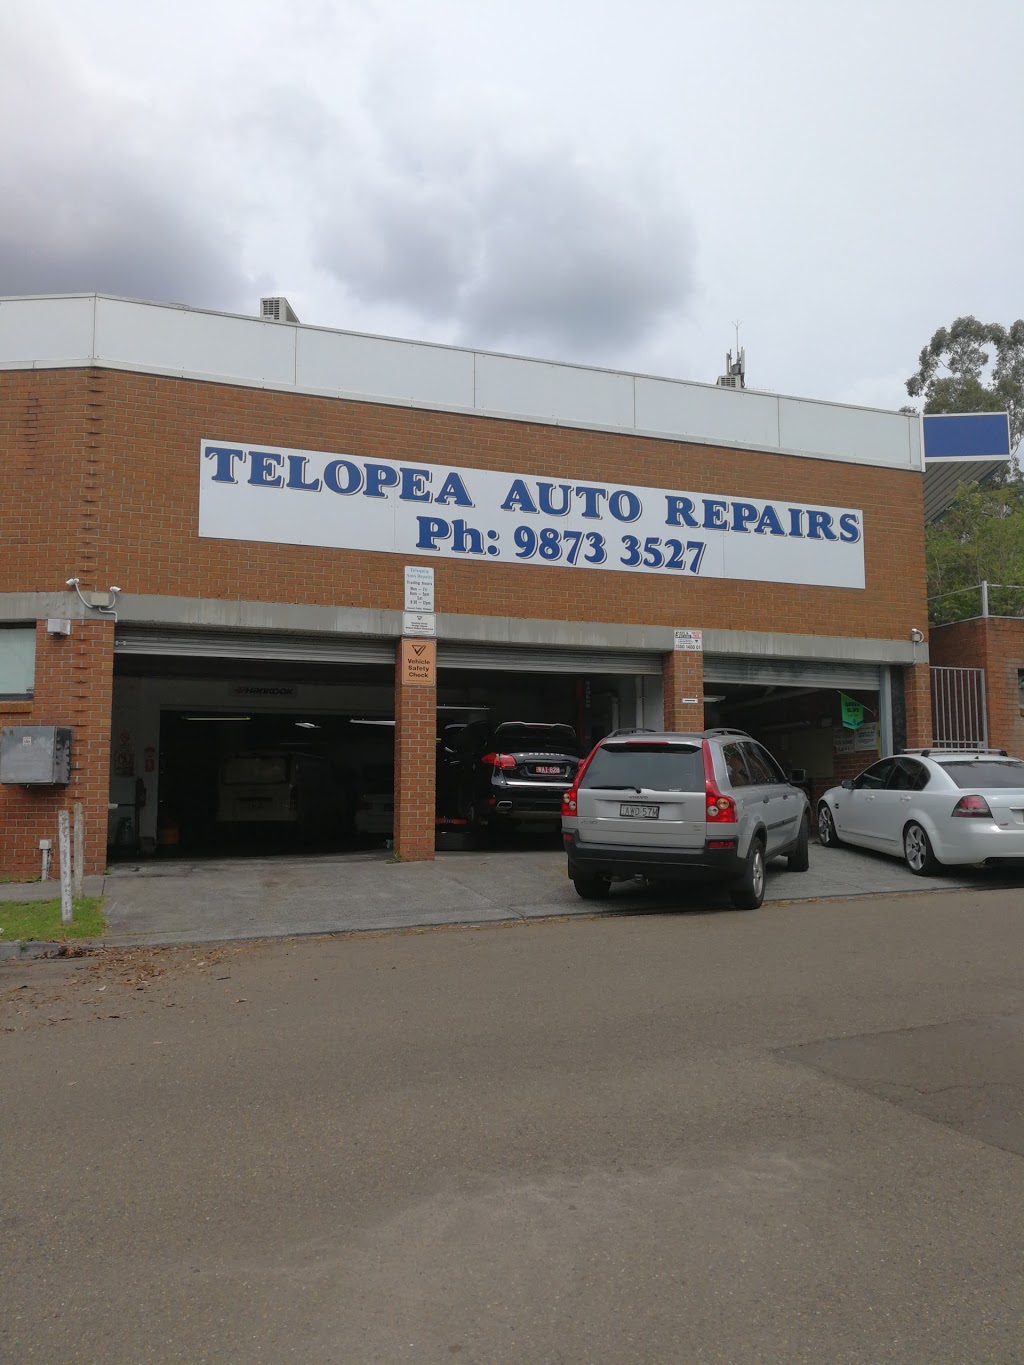 TELOPEA AUTO REPAIRS | car repair | Adderton Rd & Telopea St, Telopea NSW 2117, Australia | 0298733527 OR +61 2 9873 3527